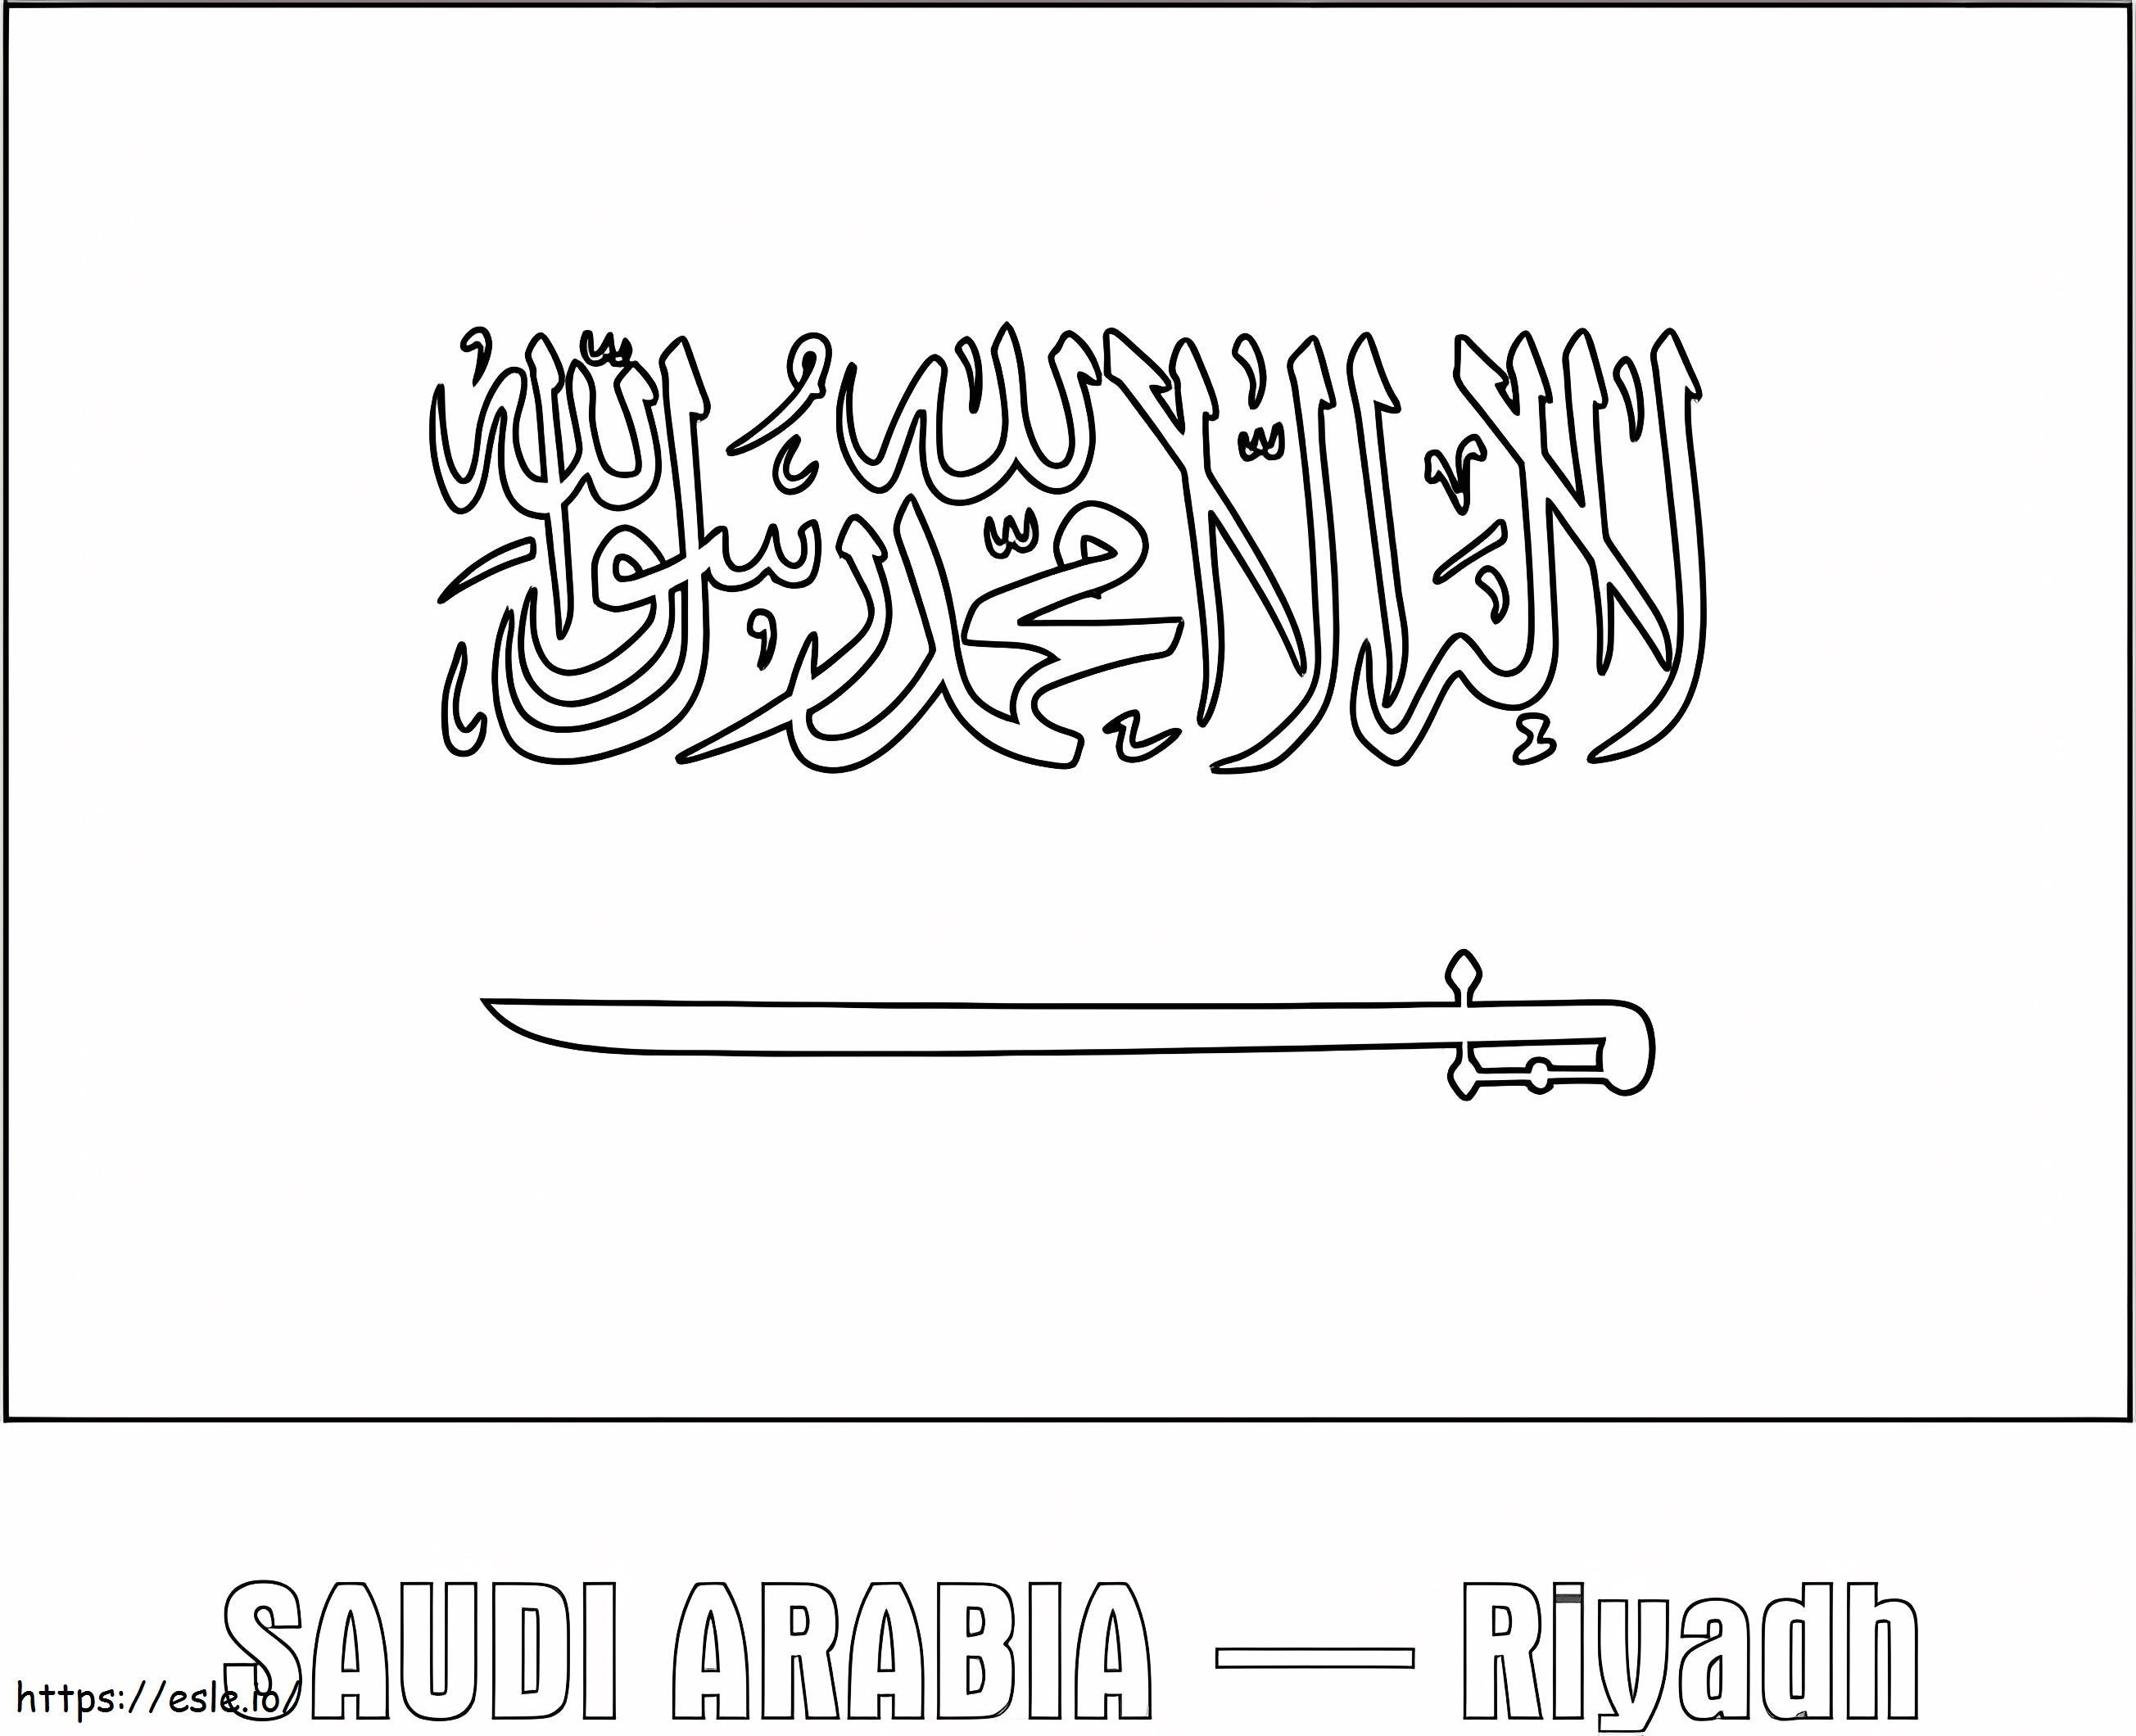 Bandiera dell'Arabia Saudita 1 da colorare